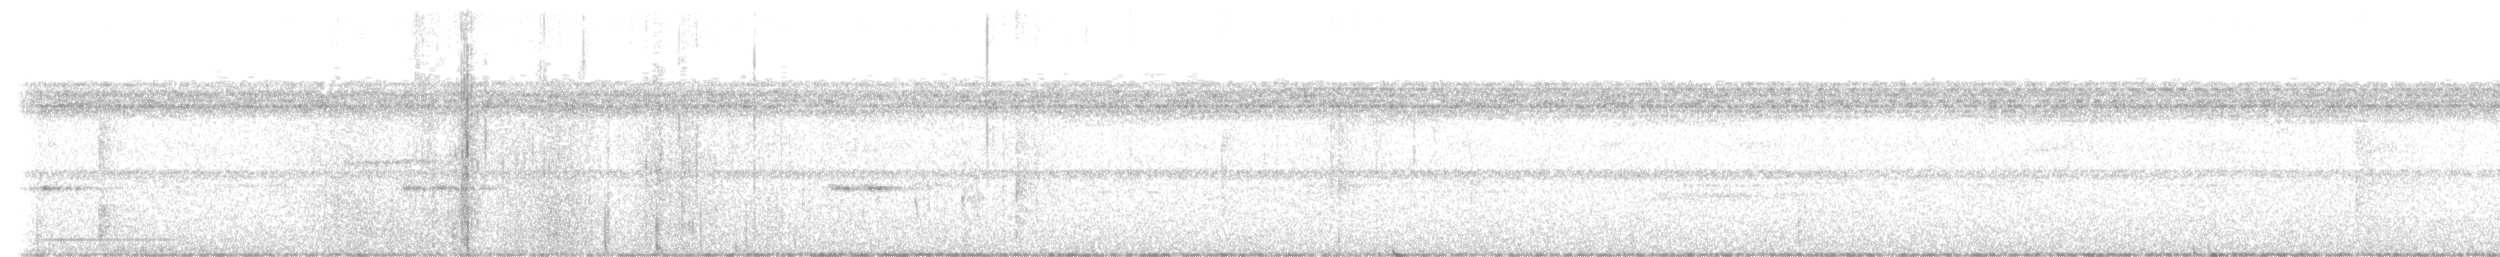 Tinamou de Boucard - ML494199151